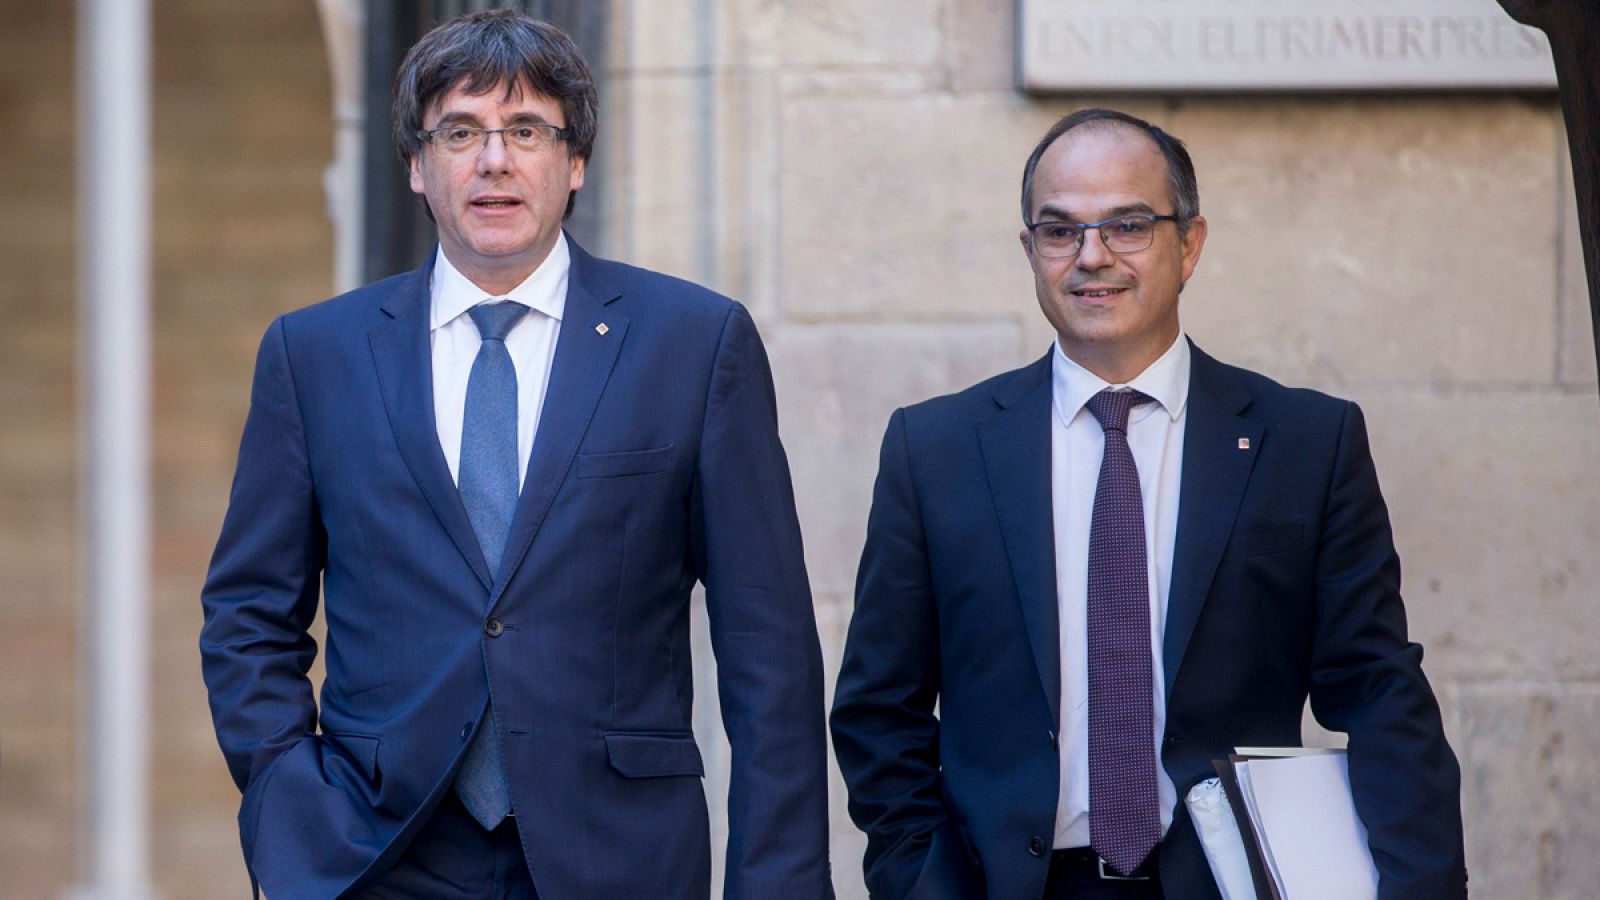 El presidente de la Generalitat, Carles Puigdemont, junto al conseller de Presidencia, Jordi Turull